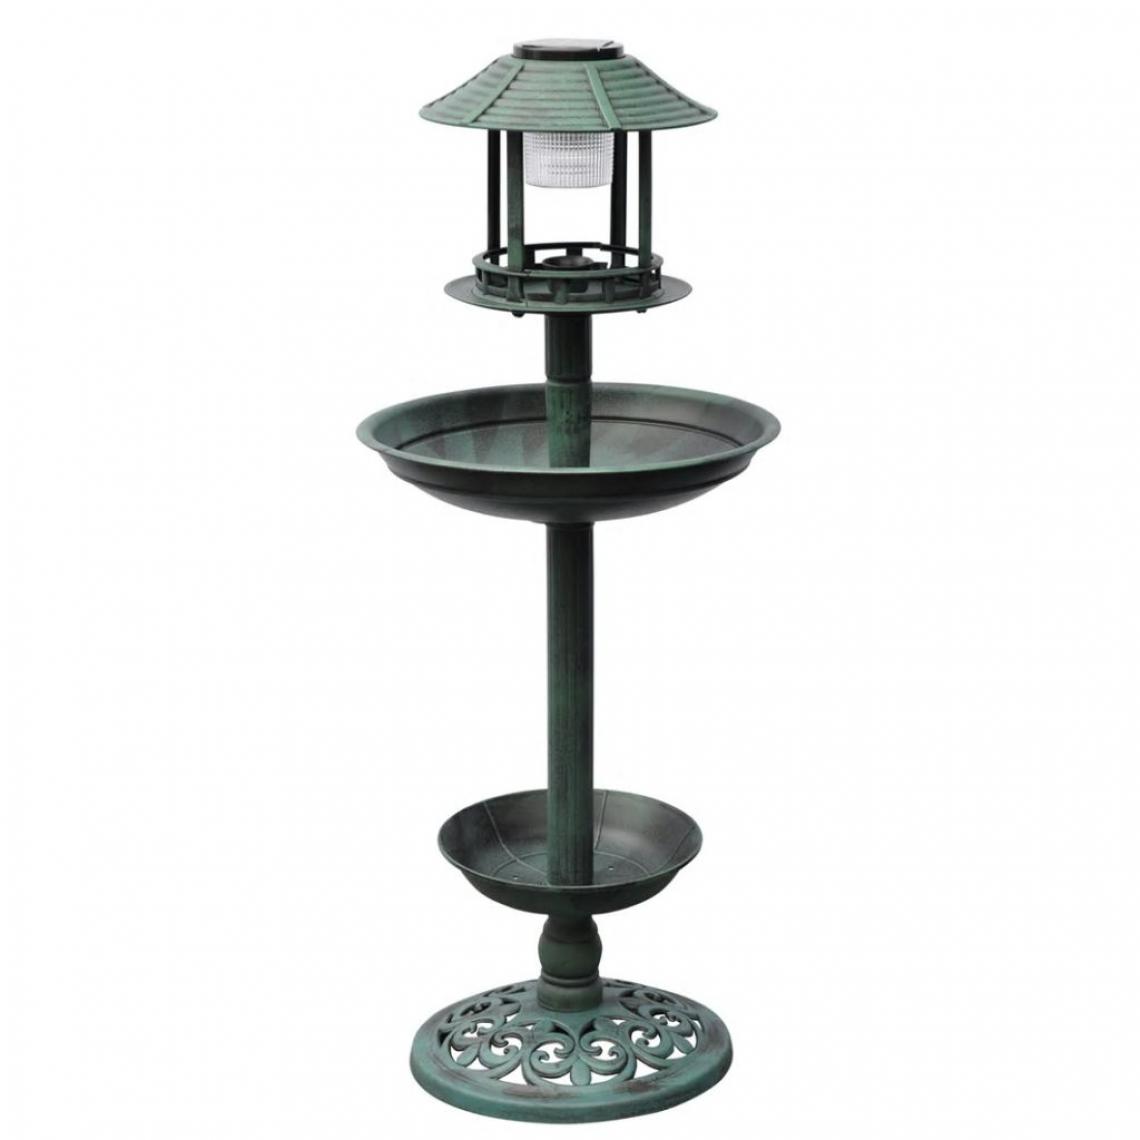 Decoshop26 - Baignoire mangeoire fontaine bain d'oiseaux verte avec lampe solaire 39x39x97 cm DEC020796 - Accessoires basse-cour